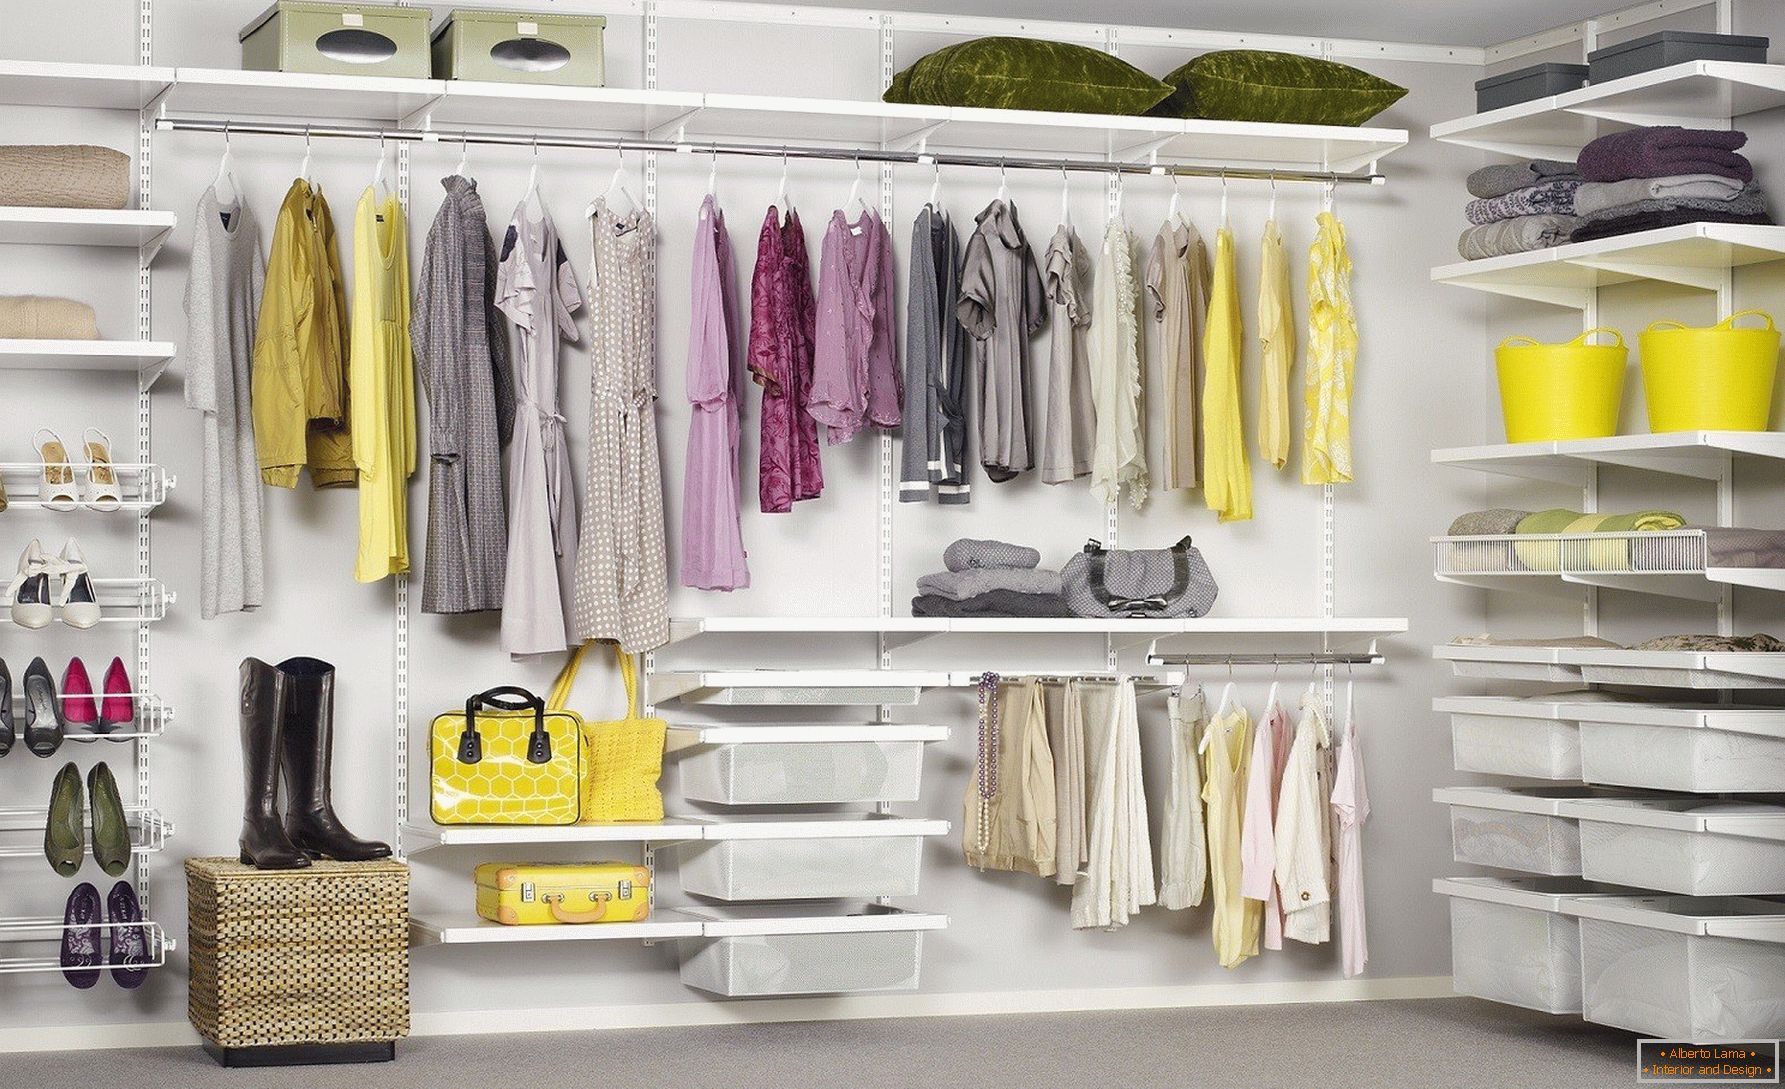 Система хранения предметов. Elfa гардеробные системы. Гардеробная аристо. Шведские гардеробные системы Elfa. Аристо наполнение для гардеробной.